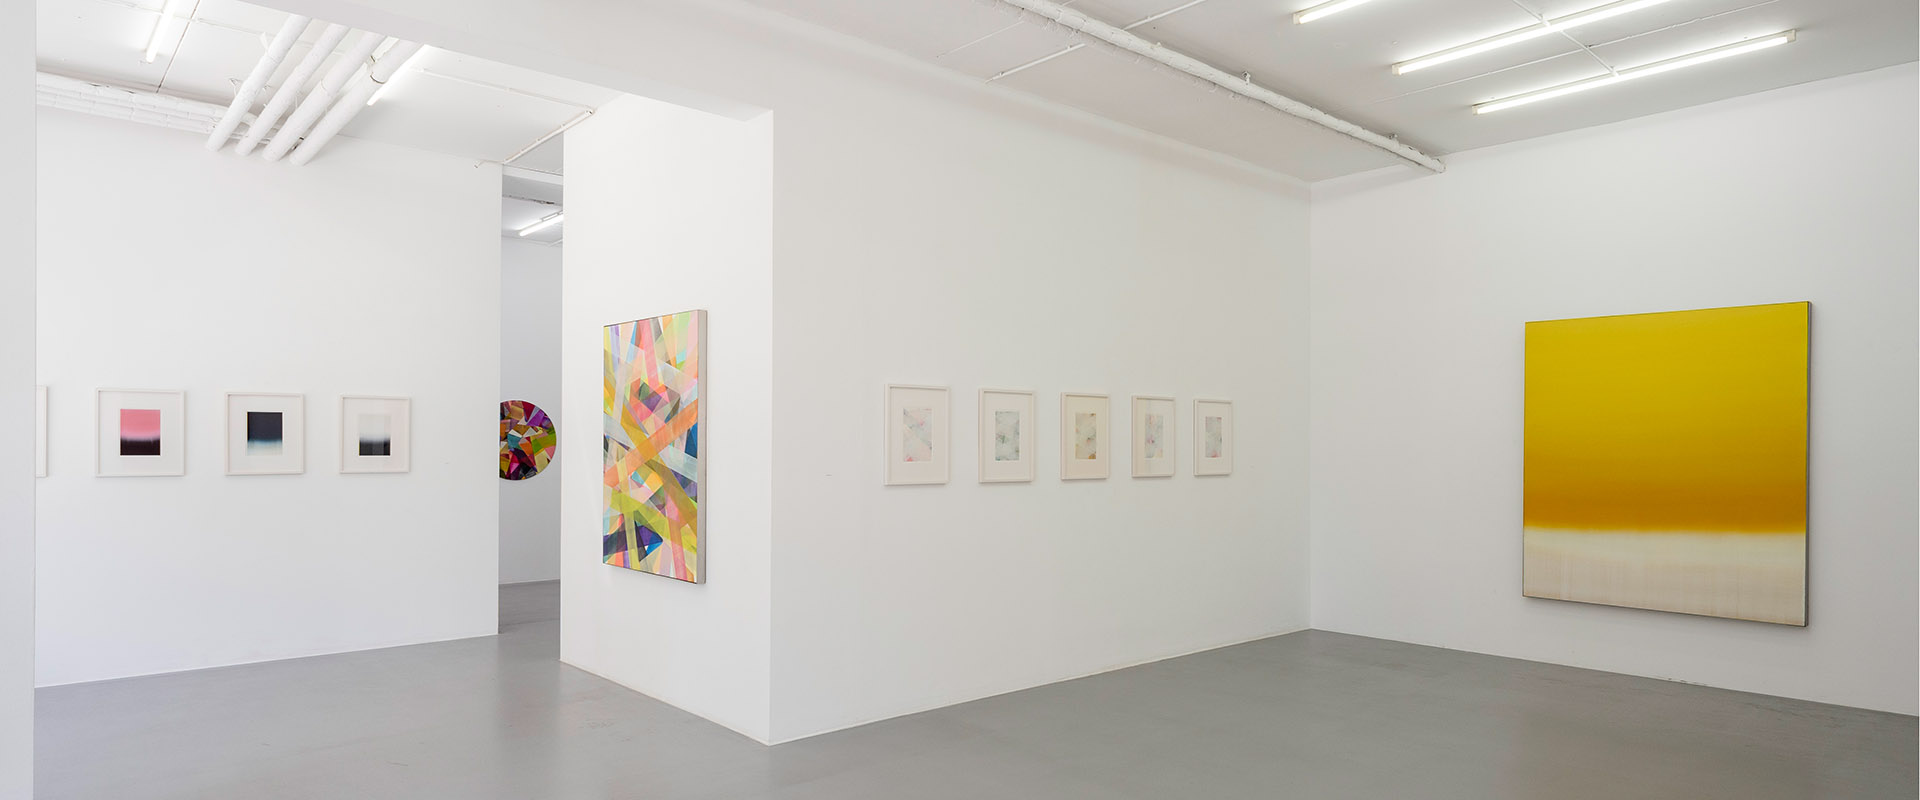 Ausstellungsansicht "Das Leben ist schön. Bim Koehler zum 70sten Geburtstag", Galerie Renate Bender, 2019